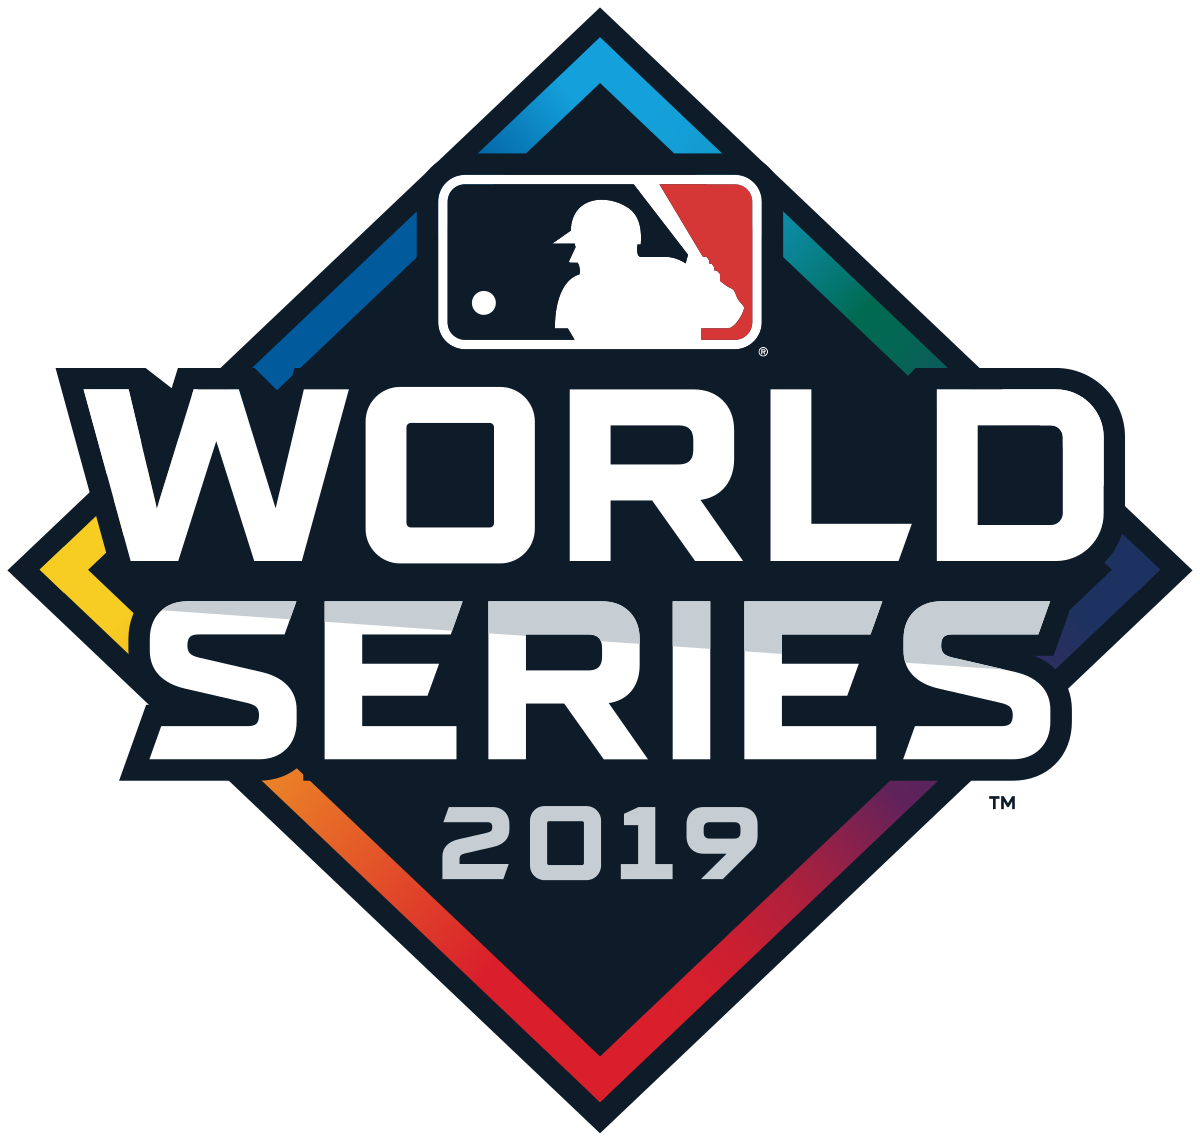 2019 World Series - Wikipedia